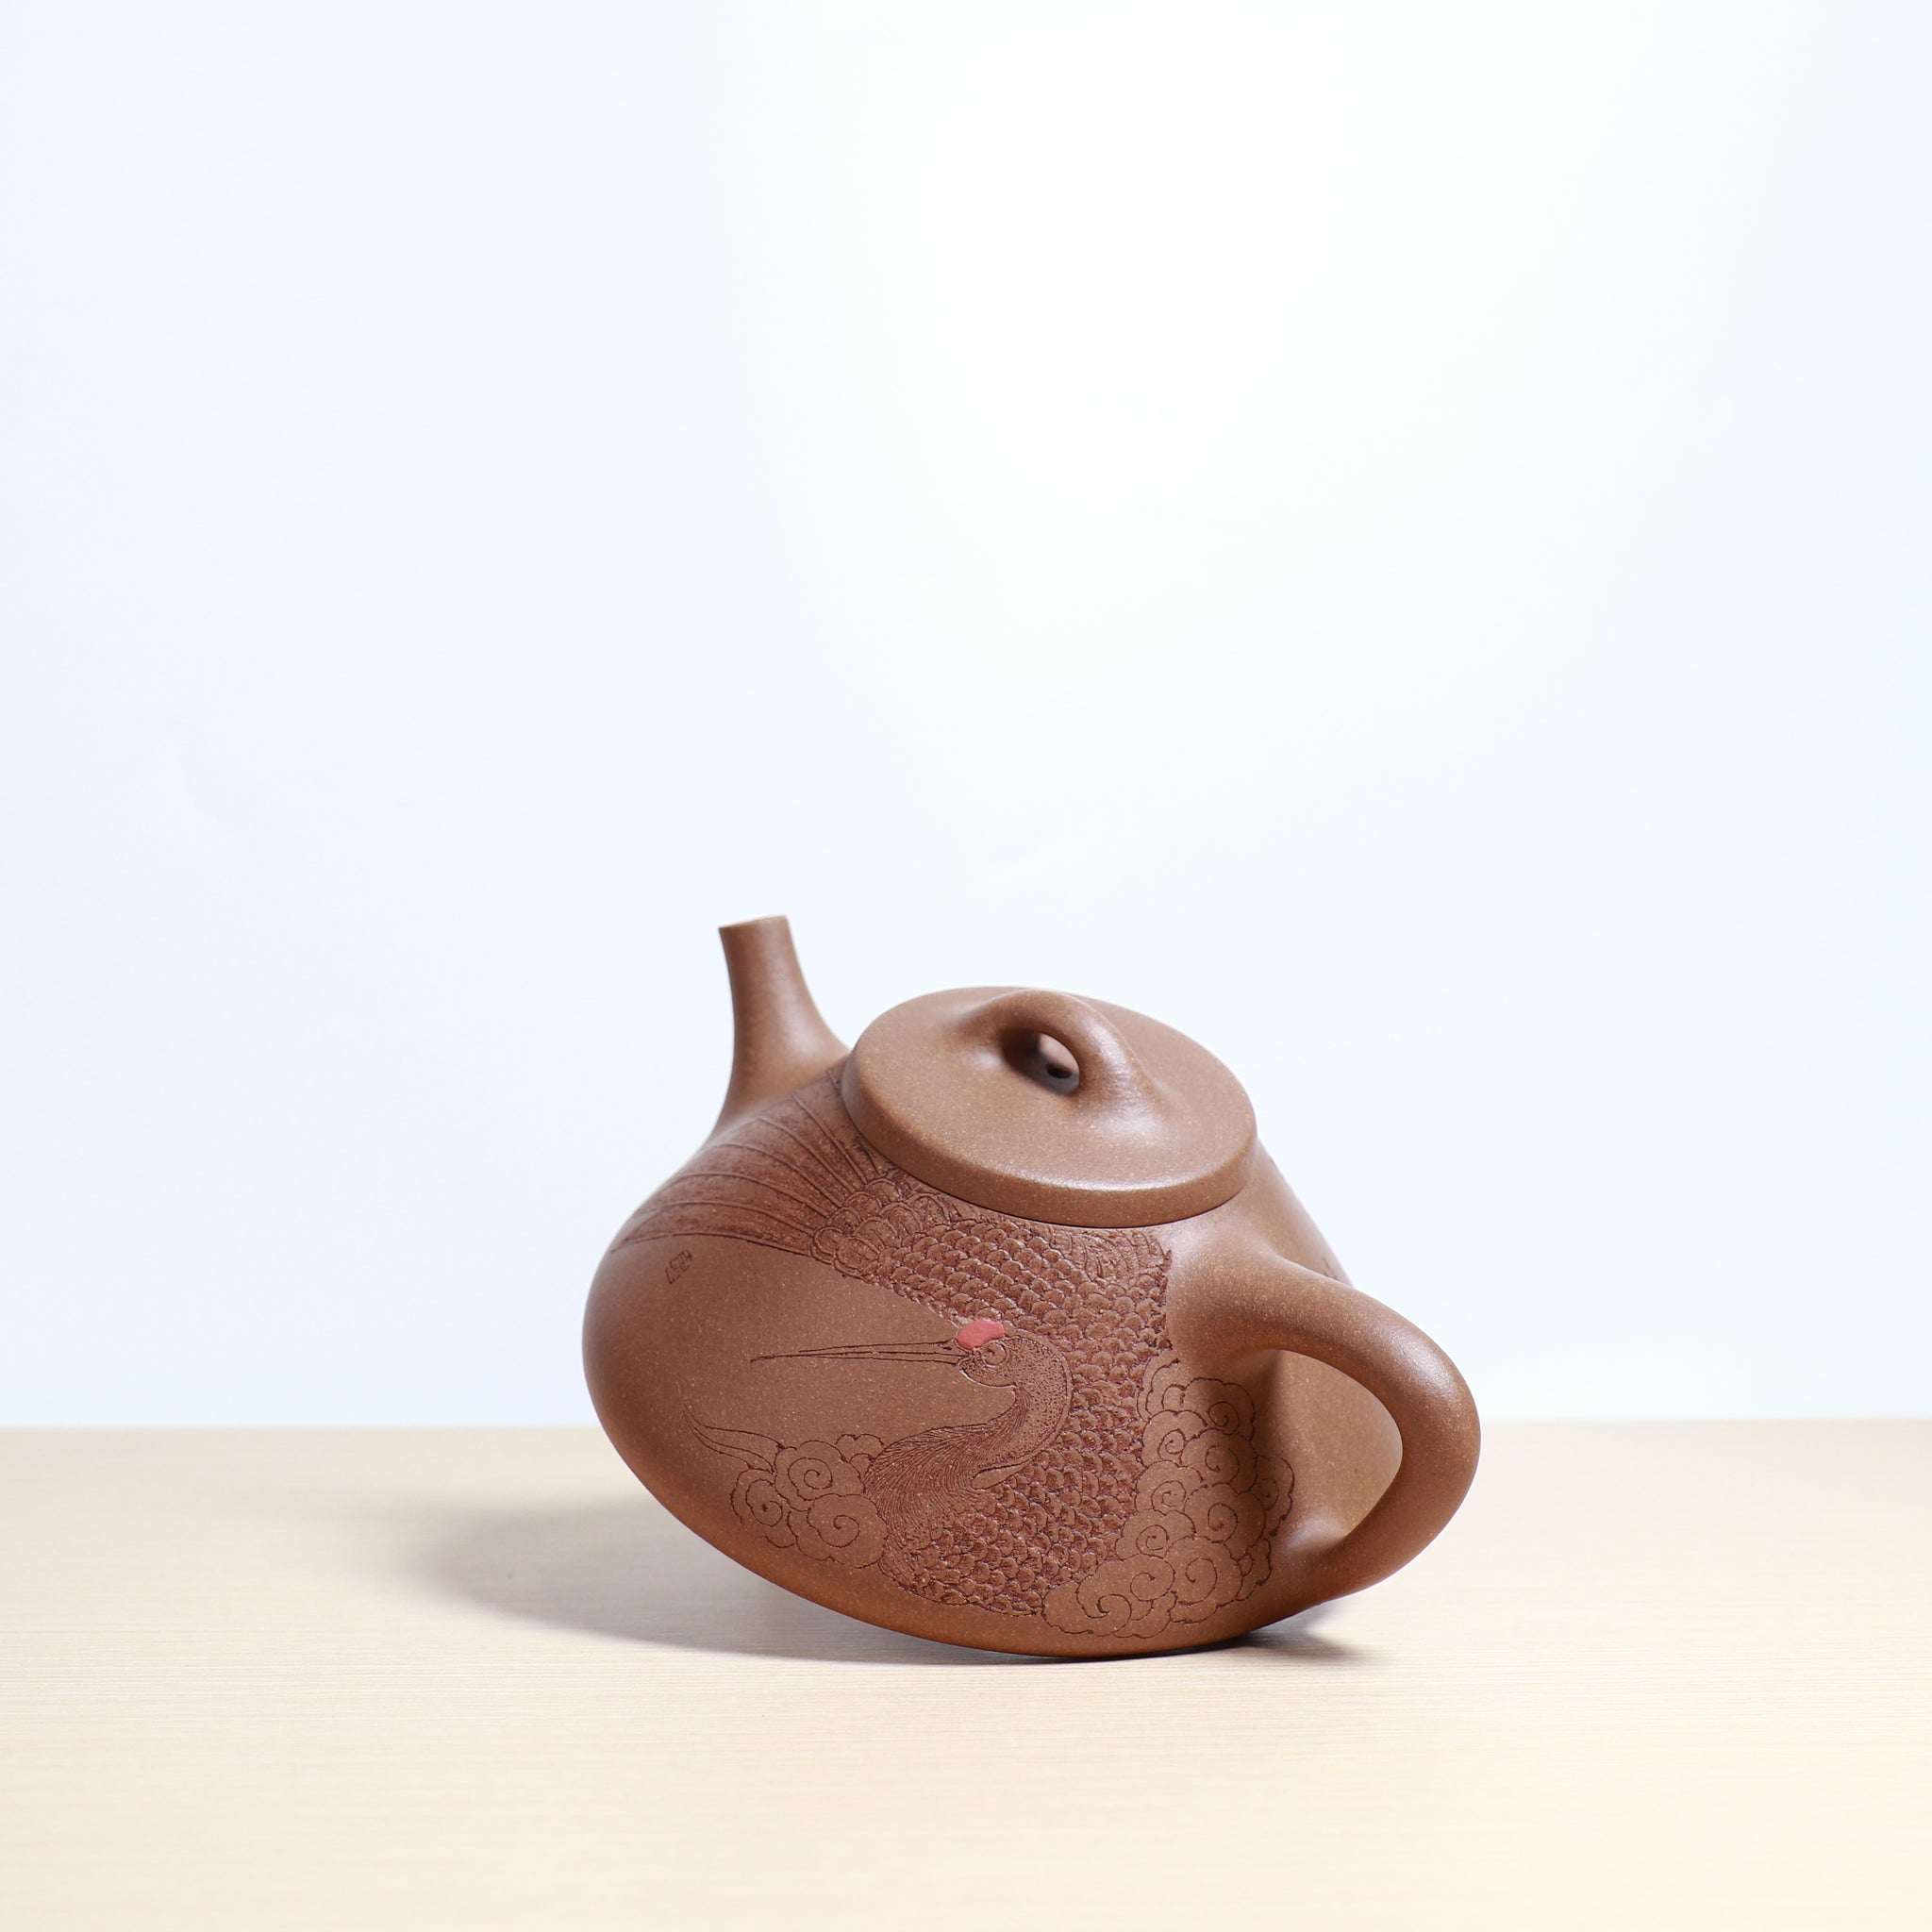 【子冶石瓢】全手工原礦段泥刻畫紫砂茶壺